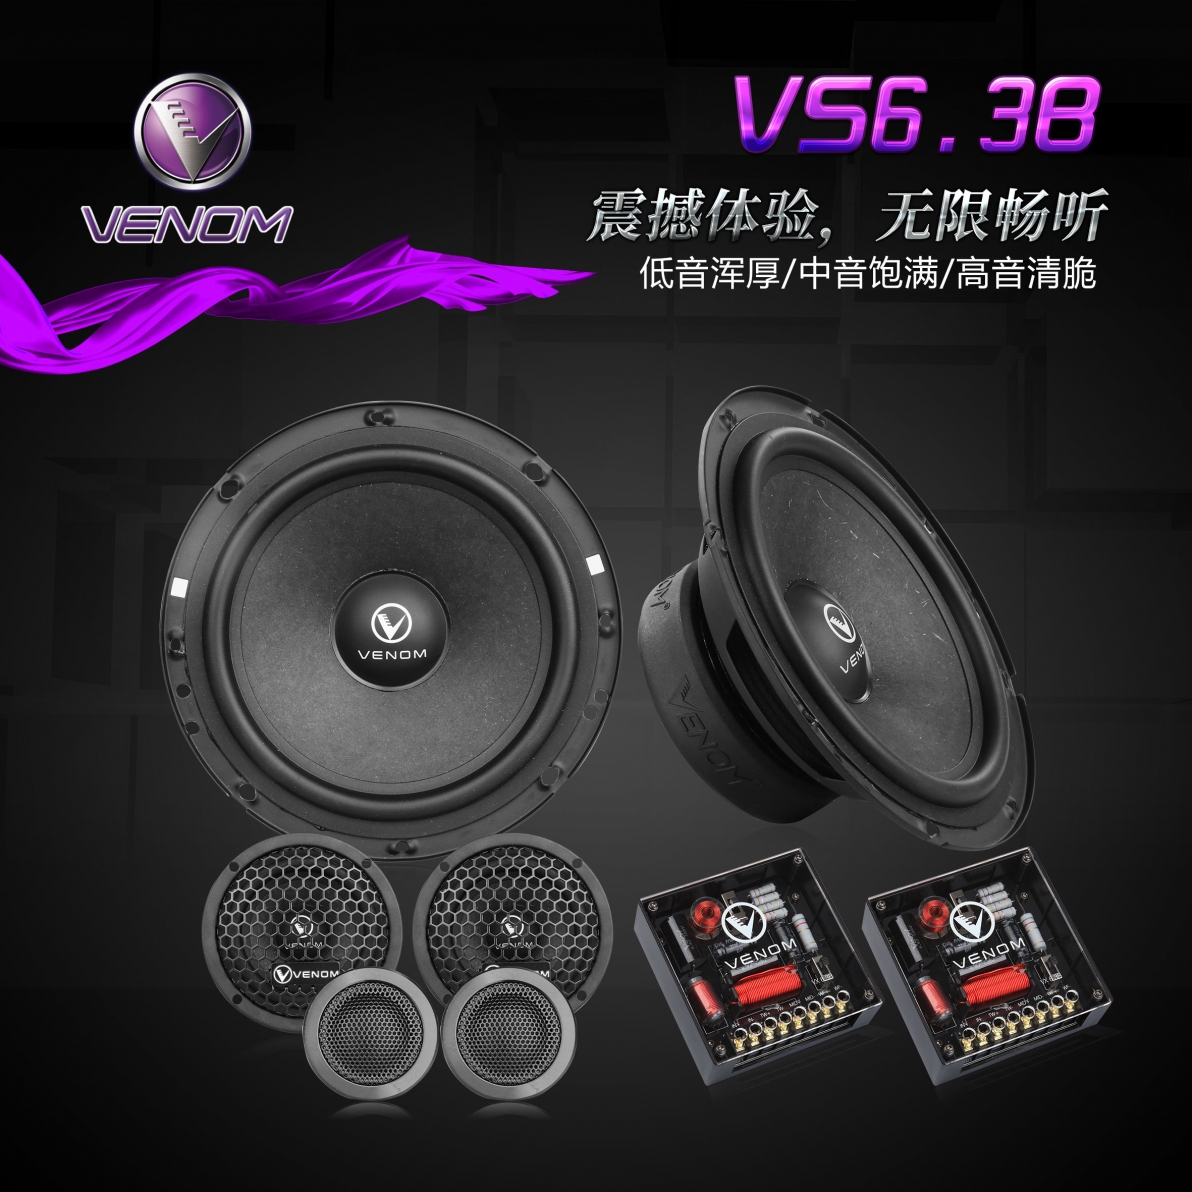 VX6.3B